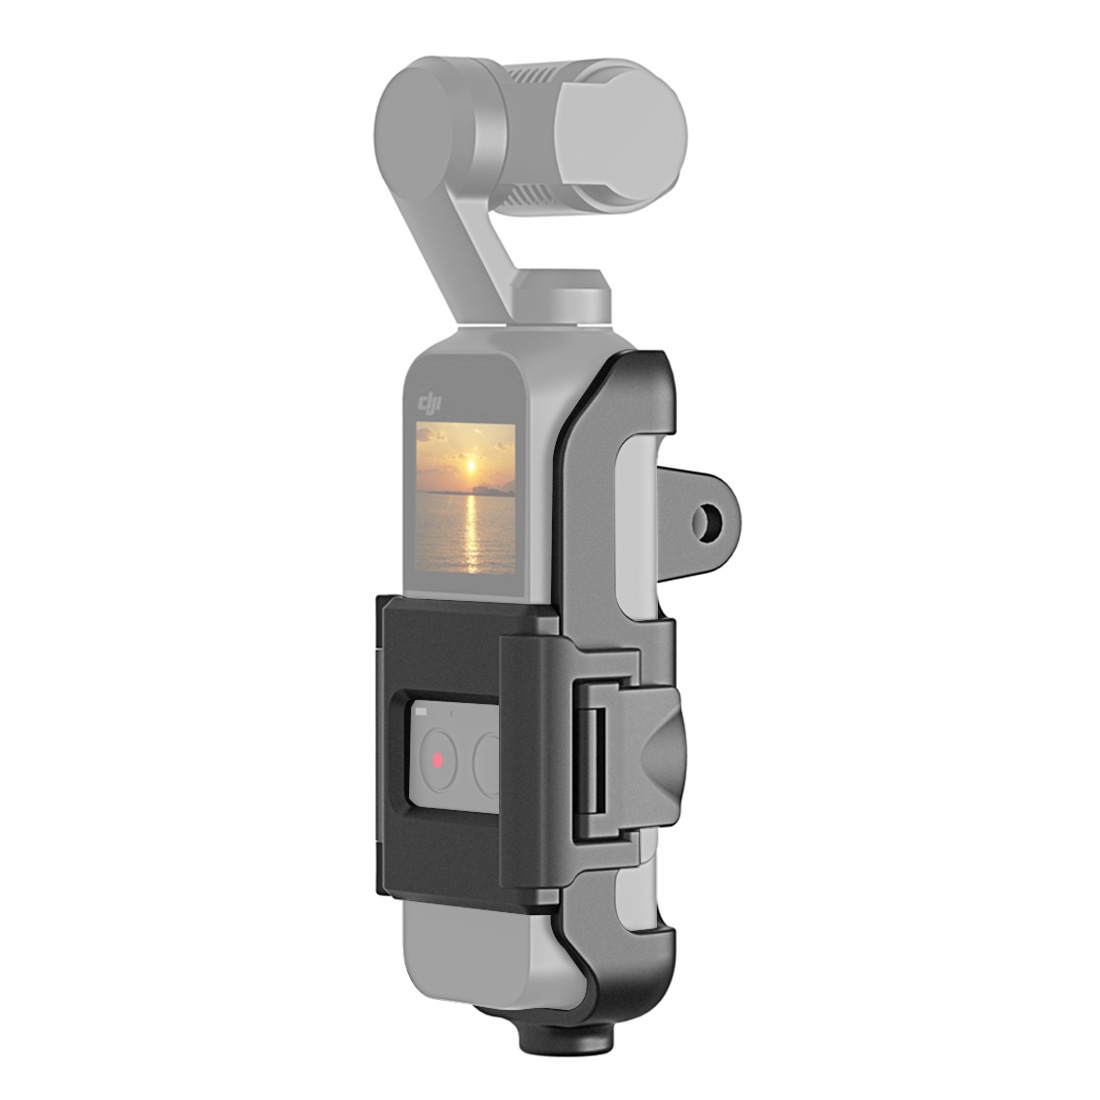 PULUZ DJI OSMO Pocket靈眸口袋相機保護邊框支架穿戴配件轉接框- 寶麗 